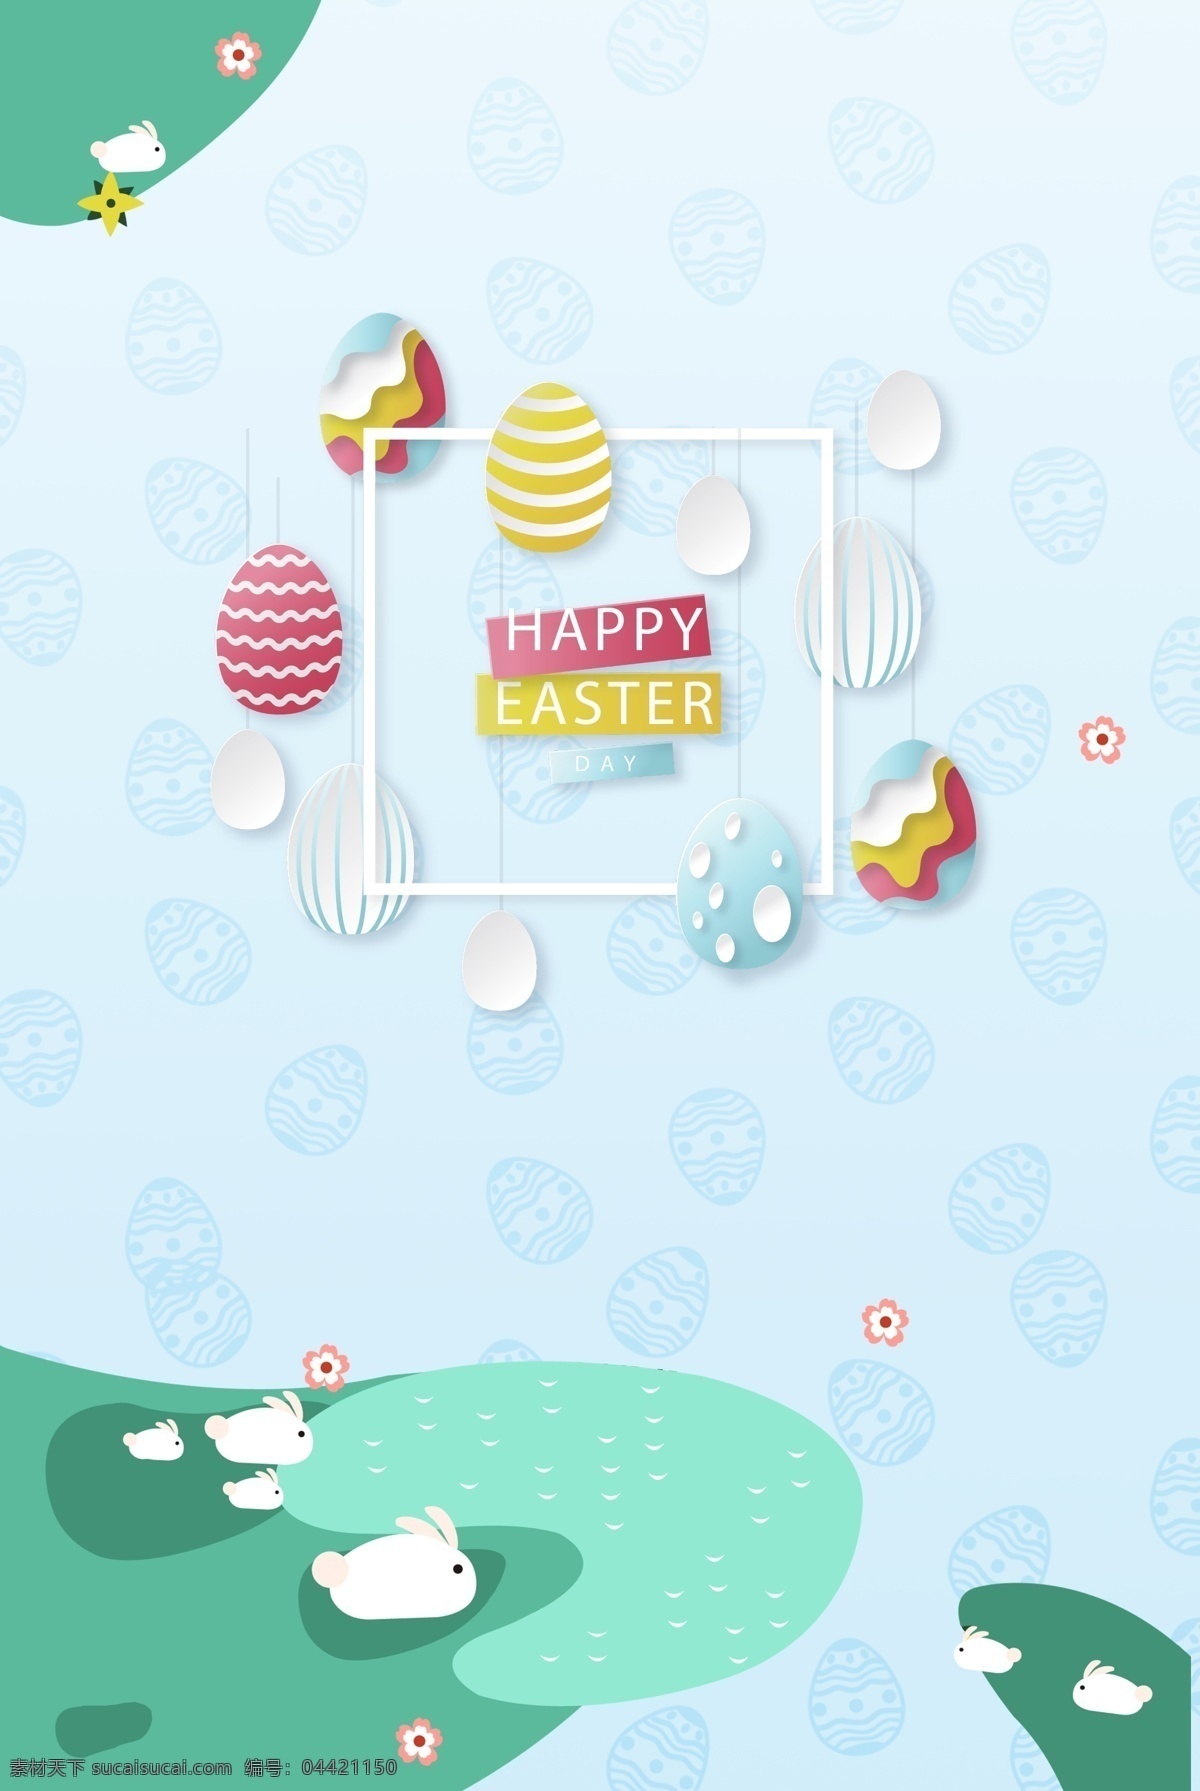 西方 复活节 节日 海报 狂欢 西方习俗 彩蛋 兔子 绿色 蓝色 复活 底纹 小花